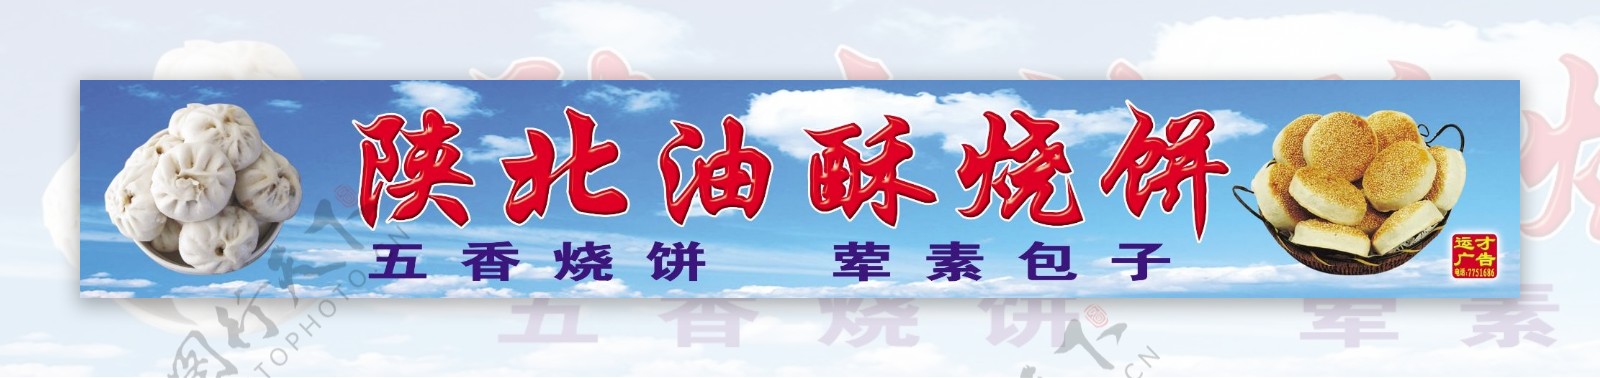 陕北烧饼包子广告模板图片